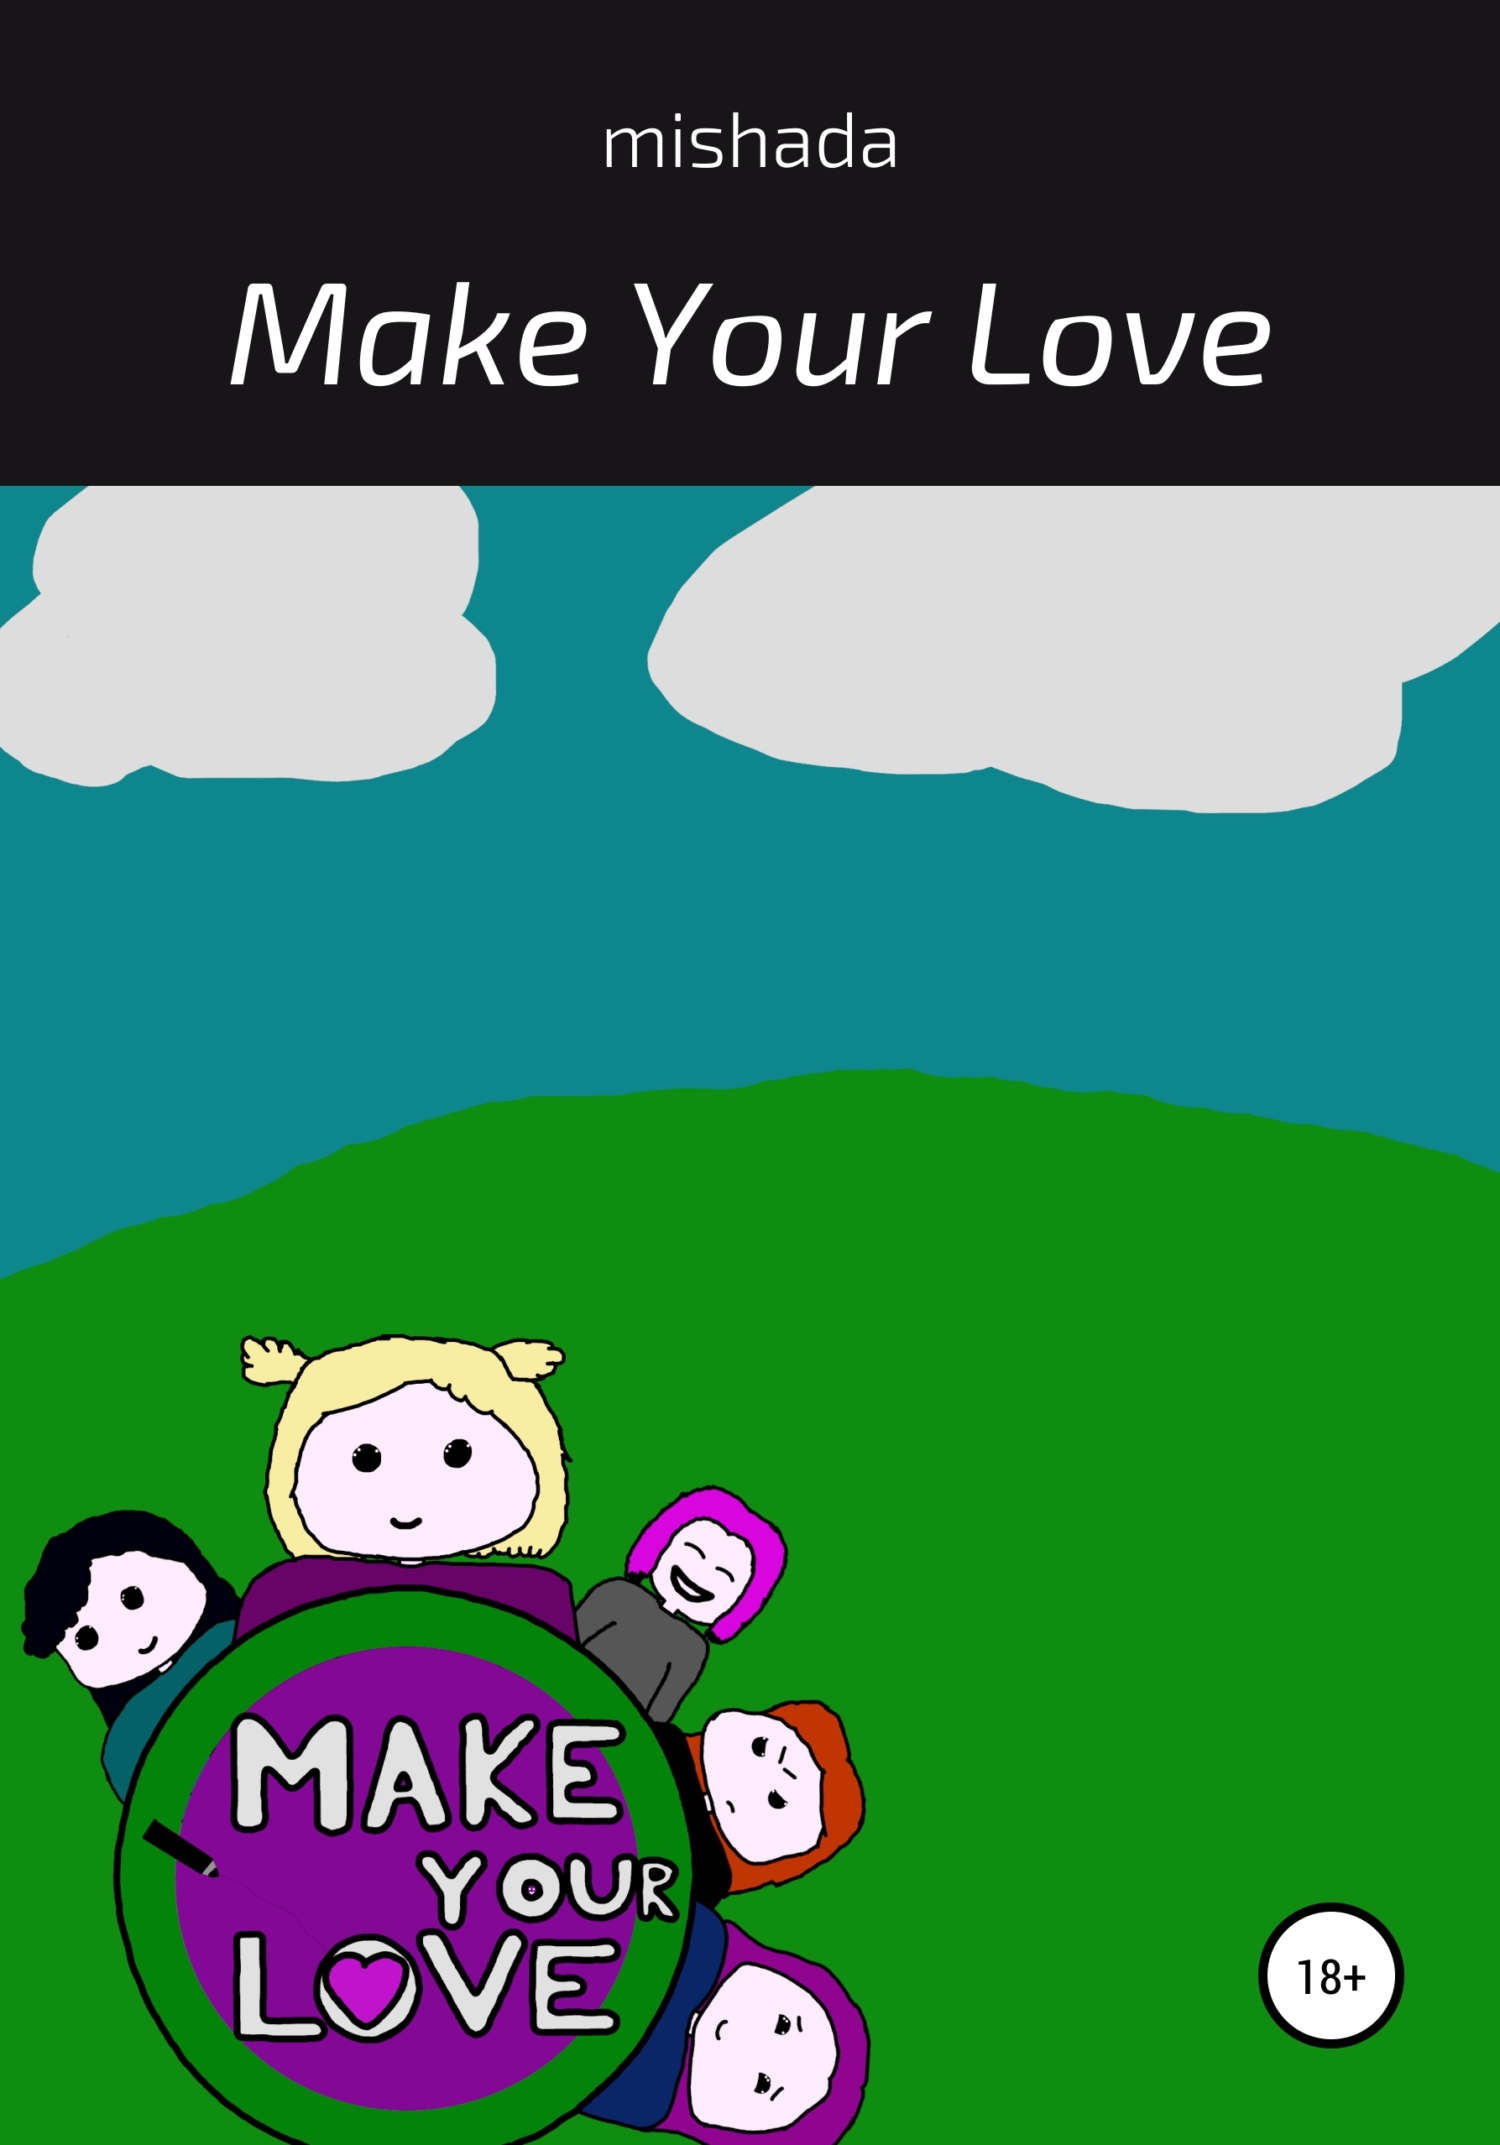 Make Your Love - mishada